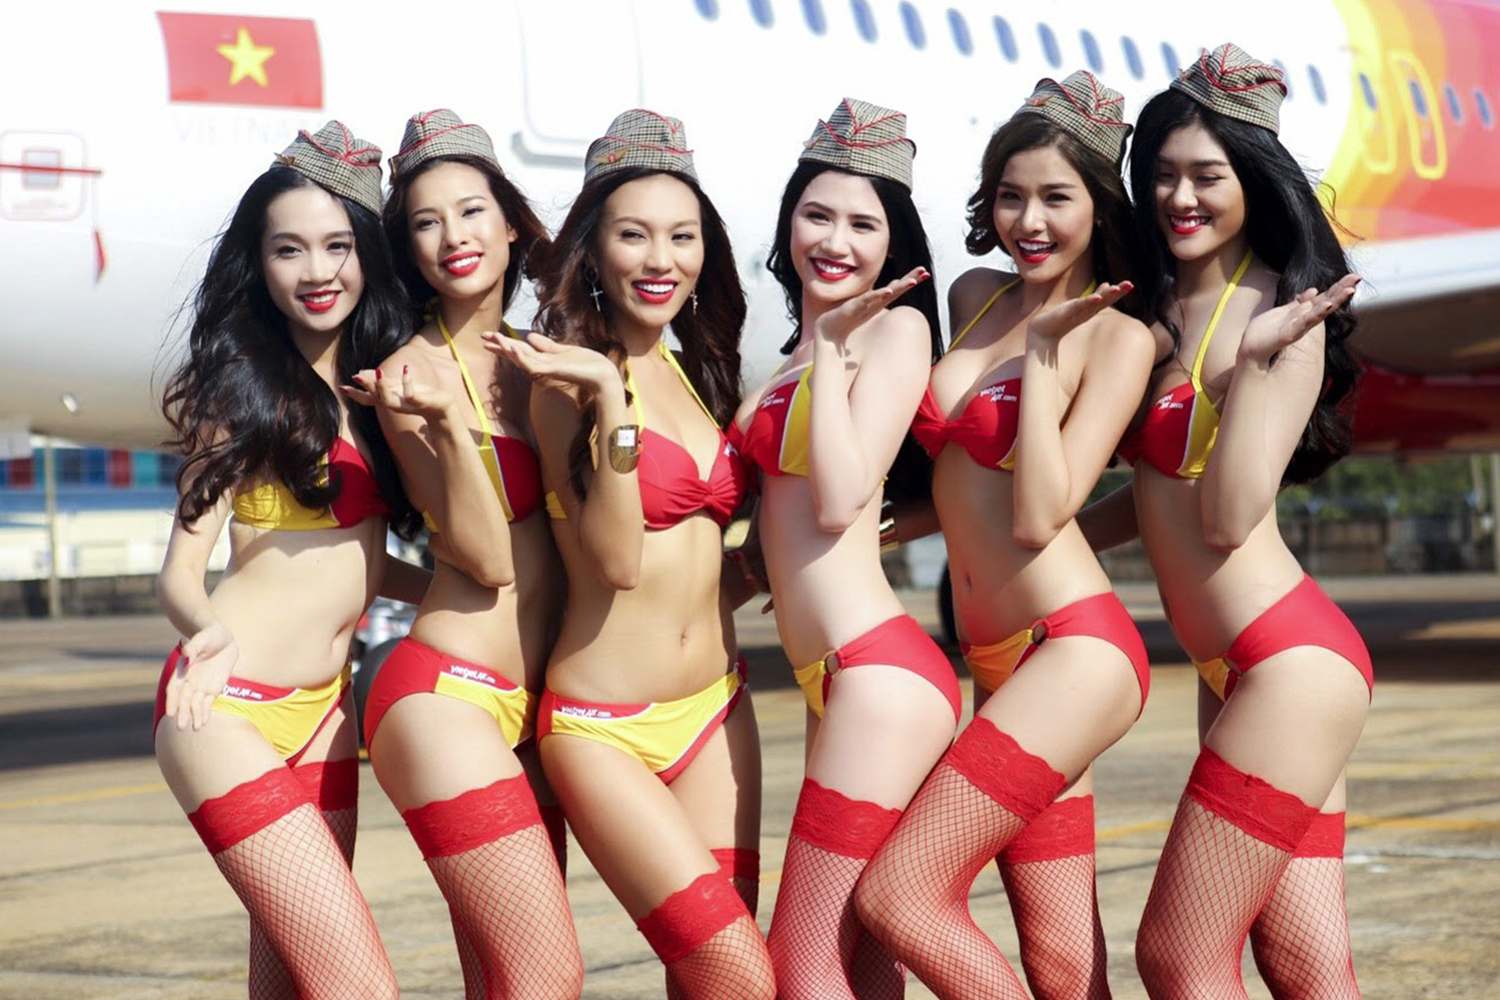 La aerolínea que recibe a sus pasajeros con azafatas en bikini